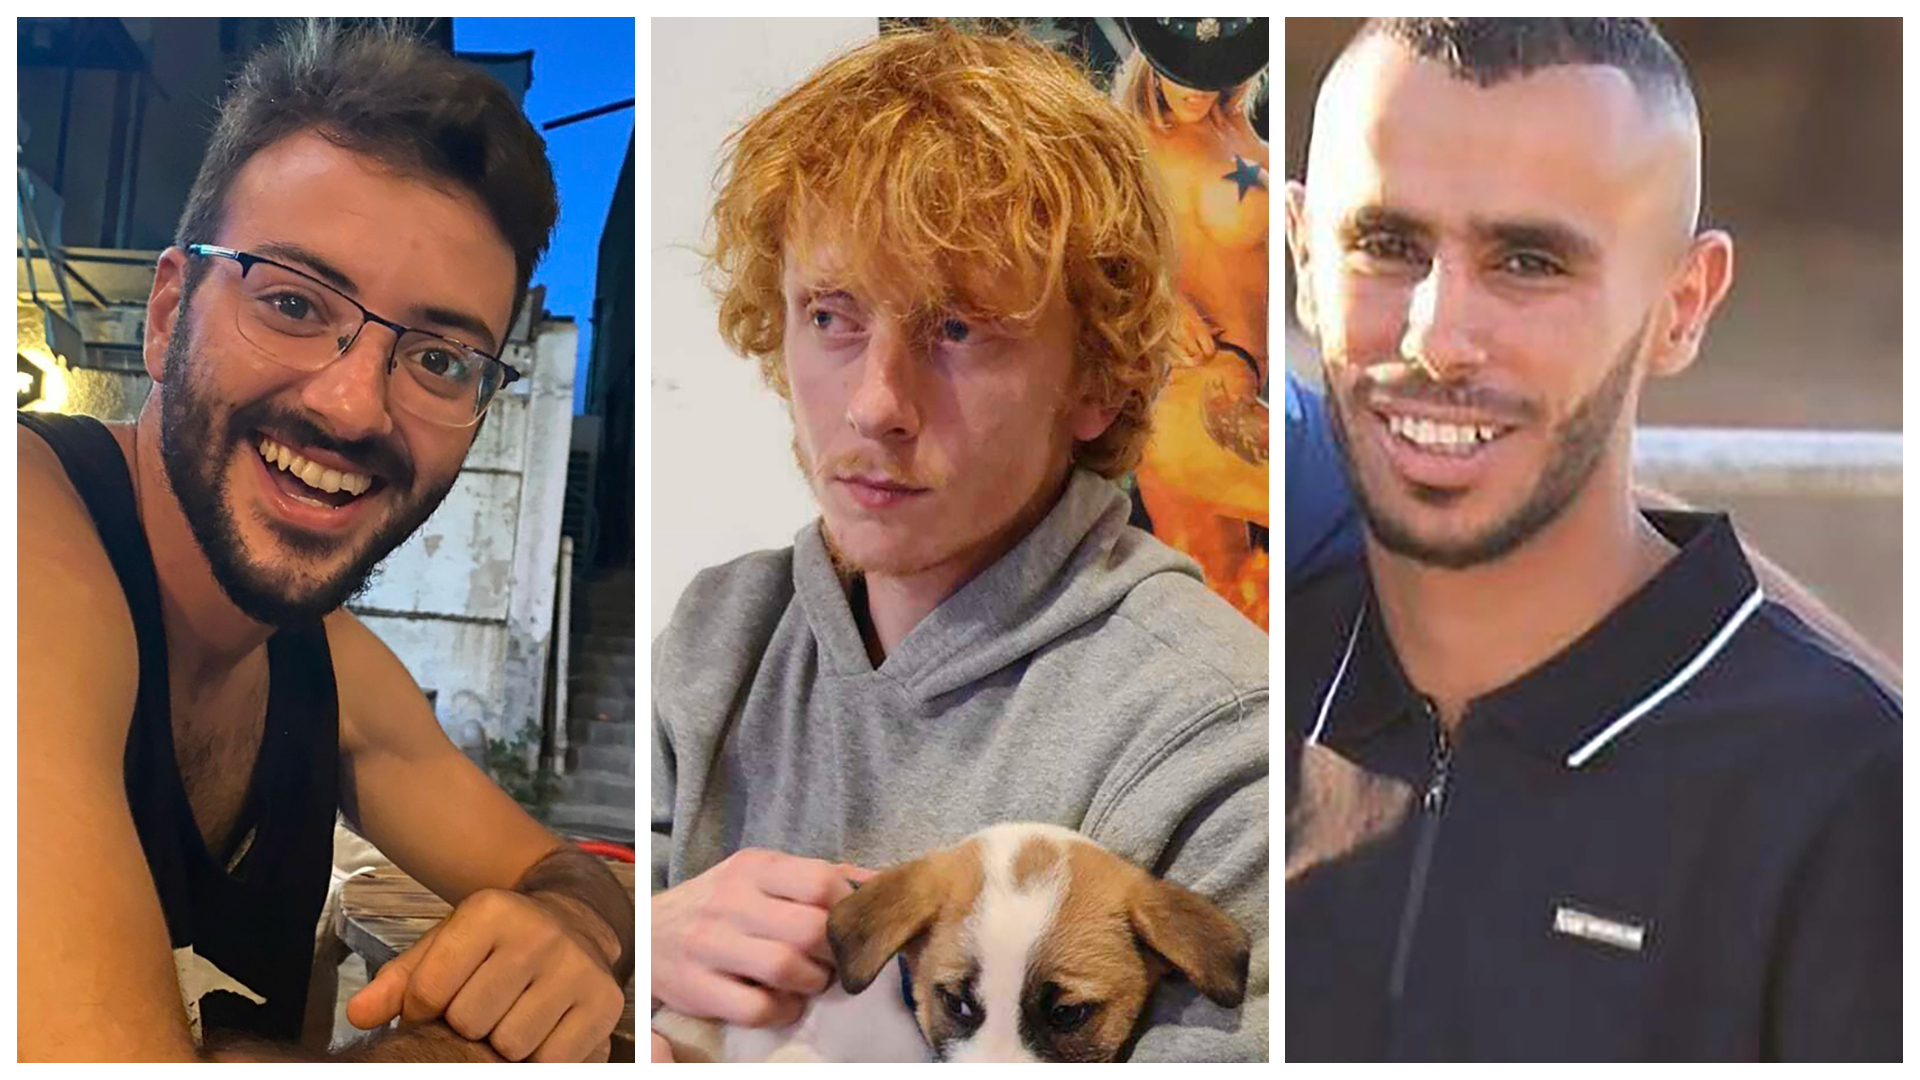 Tổng hợp ảnh của ba con tin đã bị bắt cóc từ các cộng đồng Israel gần biên giới Gaza, (từ trái sang phải) anh Alon Shamriz, anh Yotam Haim, và anh Samer Al-Talalka. (Ảnh: Được đăng dưới sự cho phép của gia đình các anh Shamriz, Haim, và Al-Talalka qua AP)